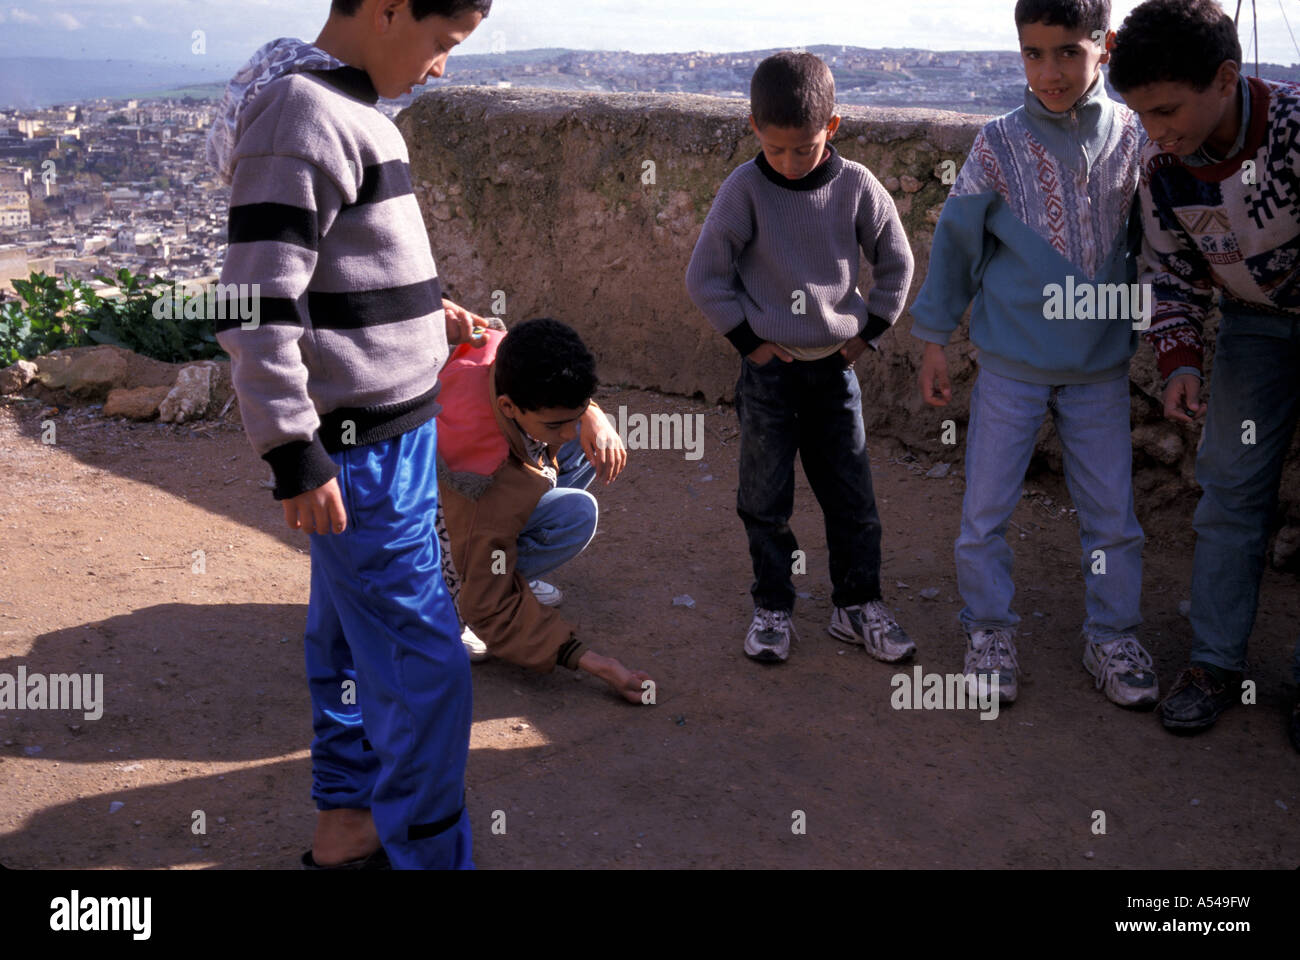 Painet hn1755 3437 Maroc garçons jouant aux billes fes au pays en développement, de pays moins développés économiquement émergentes de la culture Banque D'Images